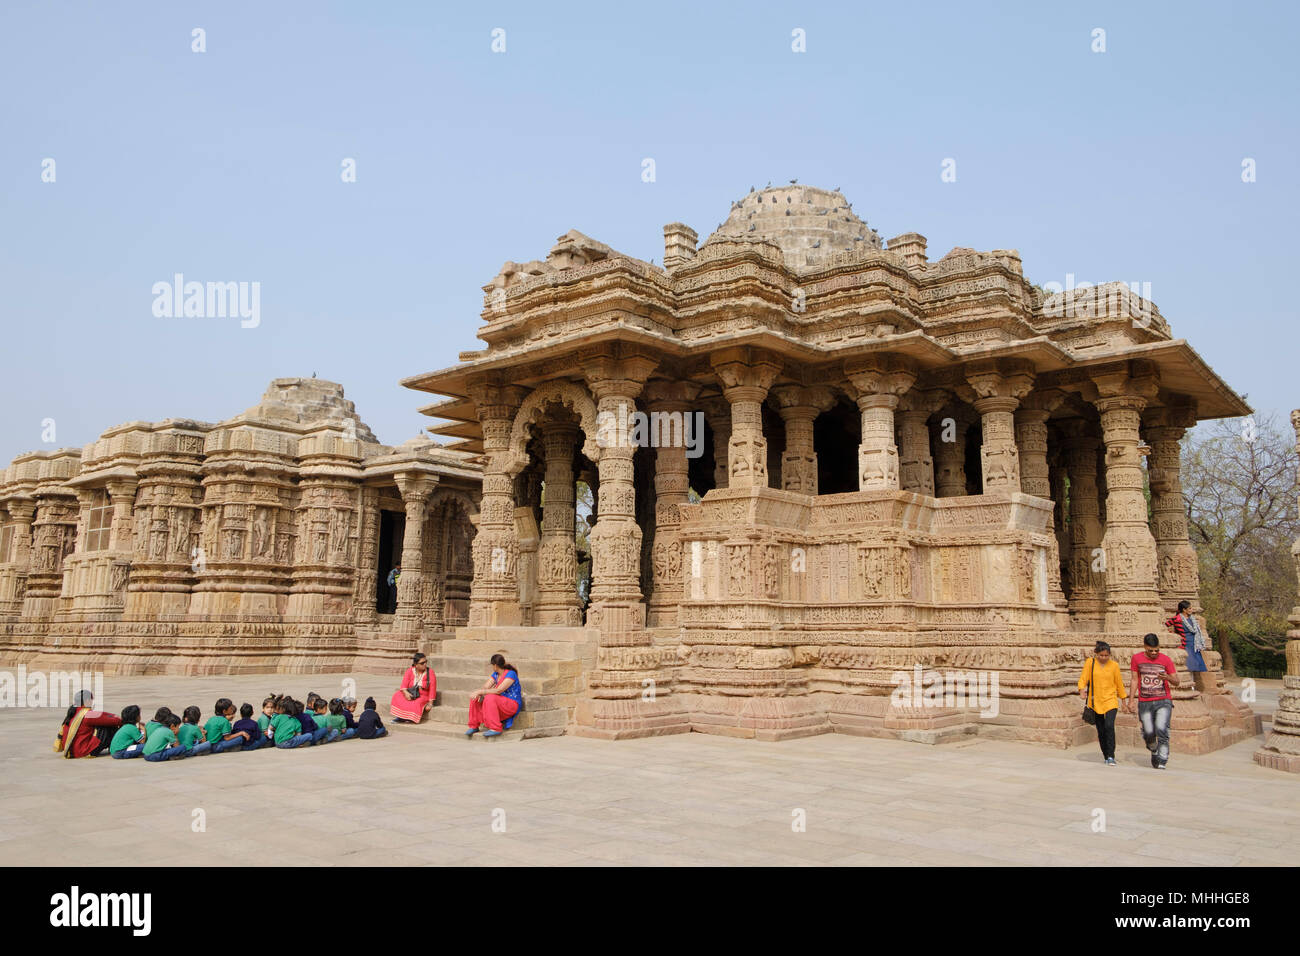 Le Temple du Soleil est un temple hindou dédié à la divinité solaire Surya Modhera situé au village de Mehsana district, Gujarat, Inde. Photo Mike Abrahams Banque D'Images